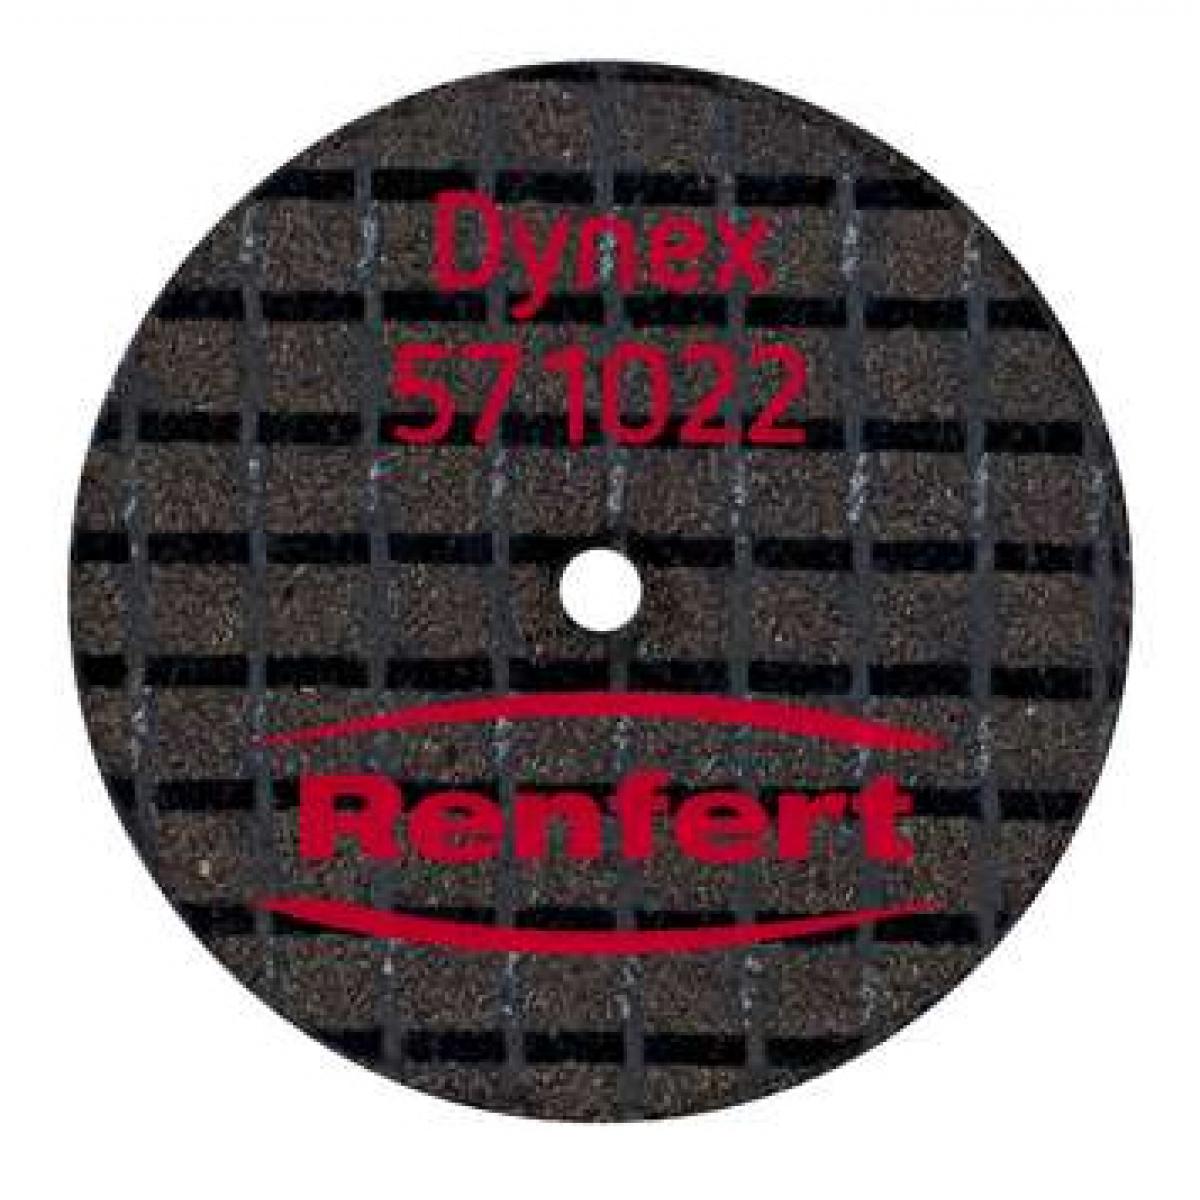 DISCO DYNEX 22X1 0MM CX25 571022 no pre co RENFERT -